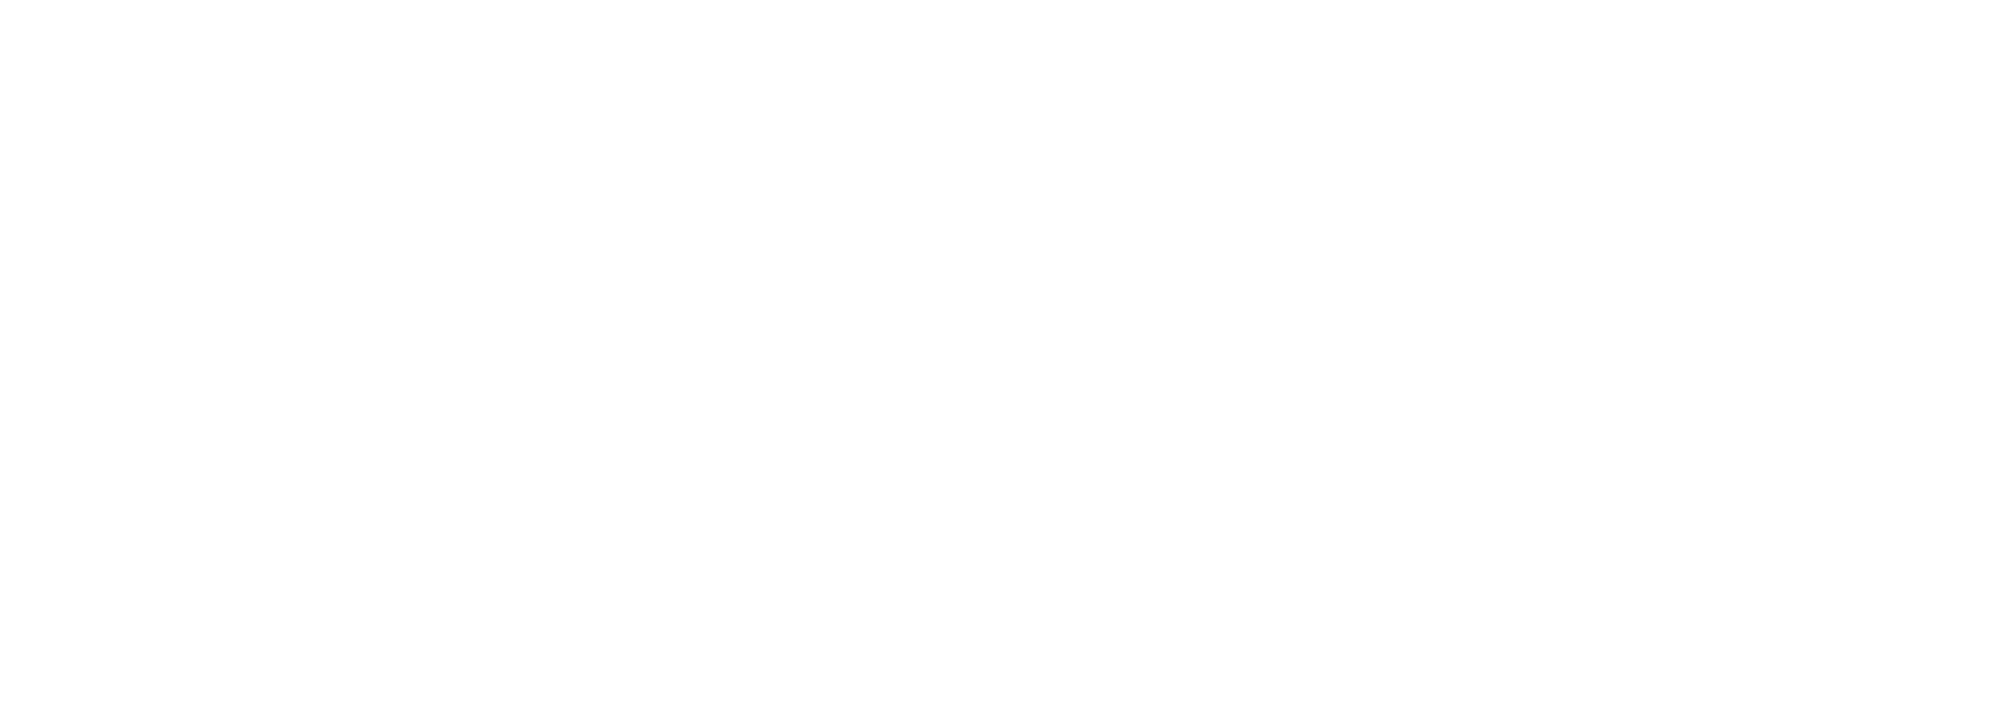 logo2-9-white